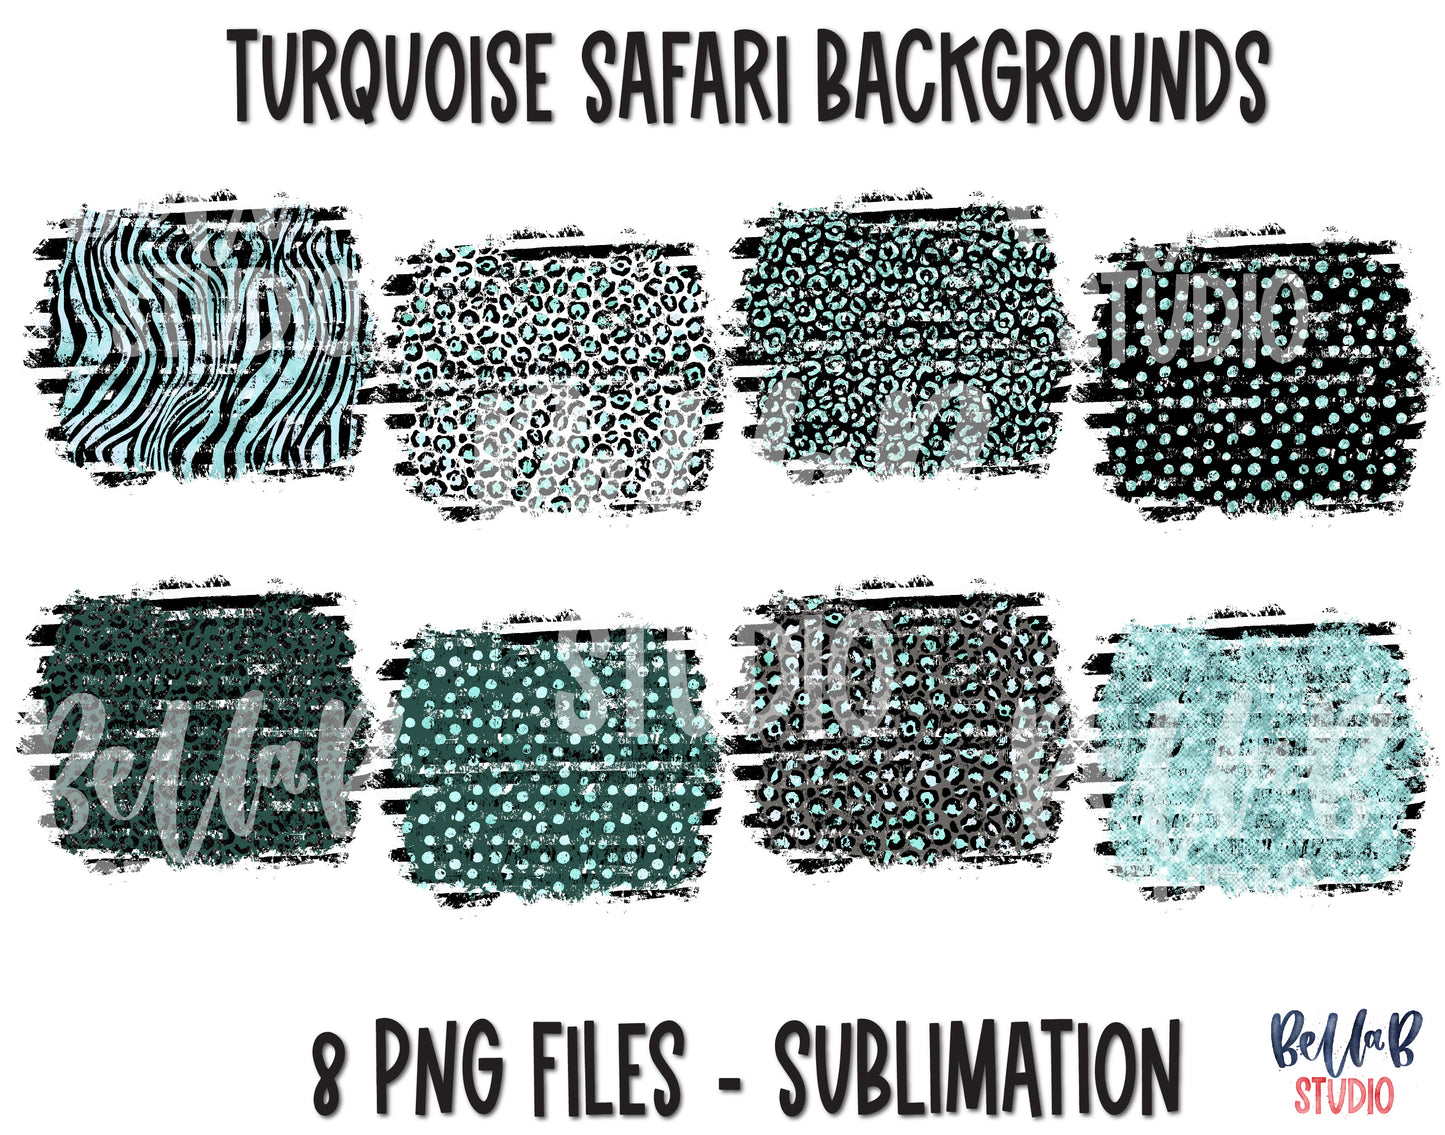 Turquoise Safari Background Sublimation Bundle